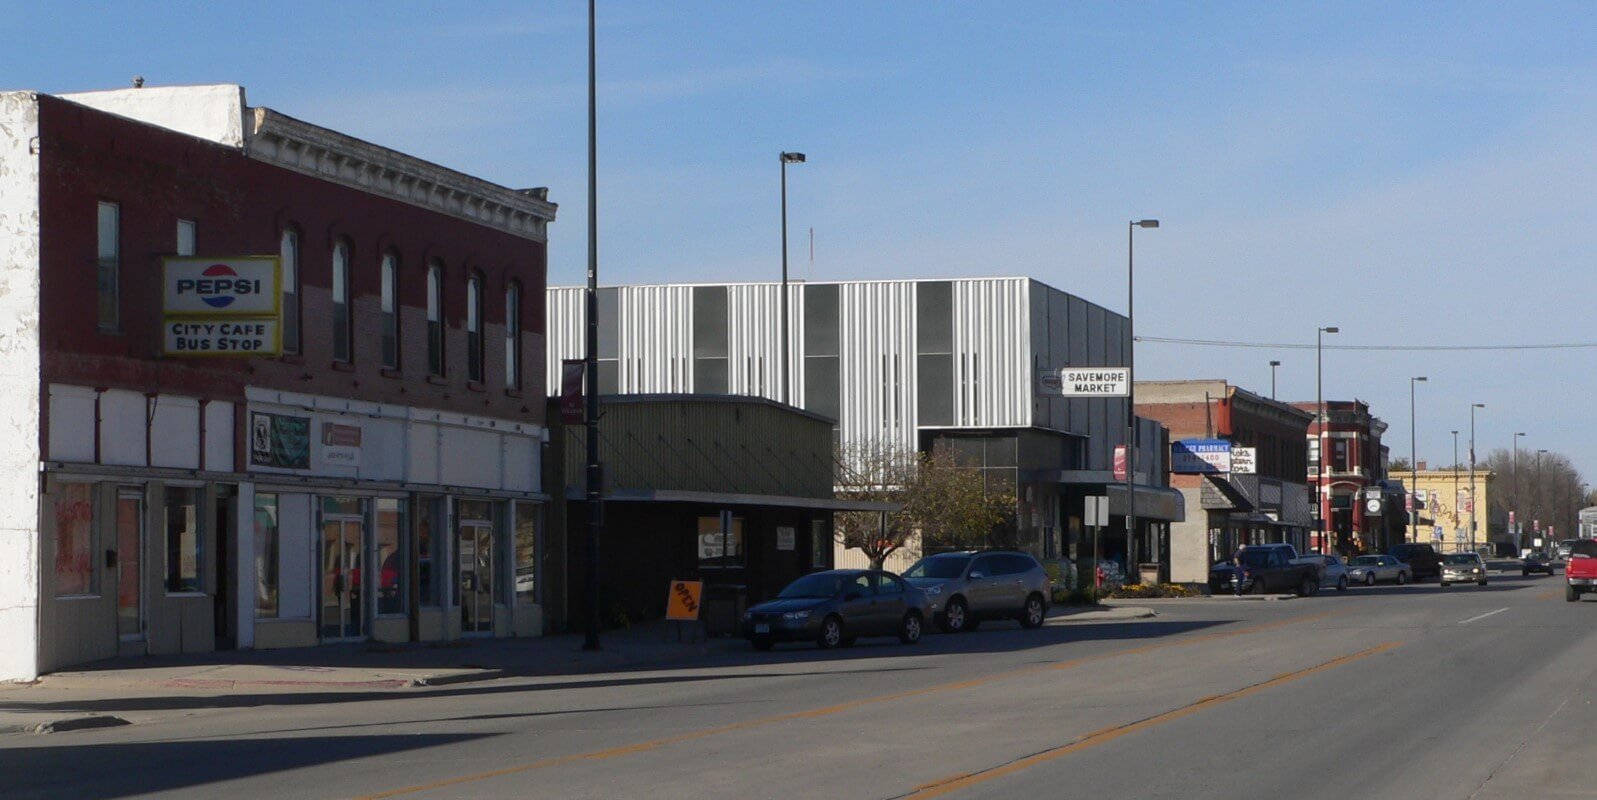 Businesses on a street in Tekamah, NE.